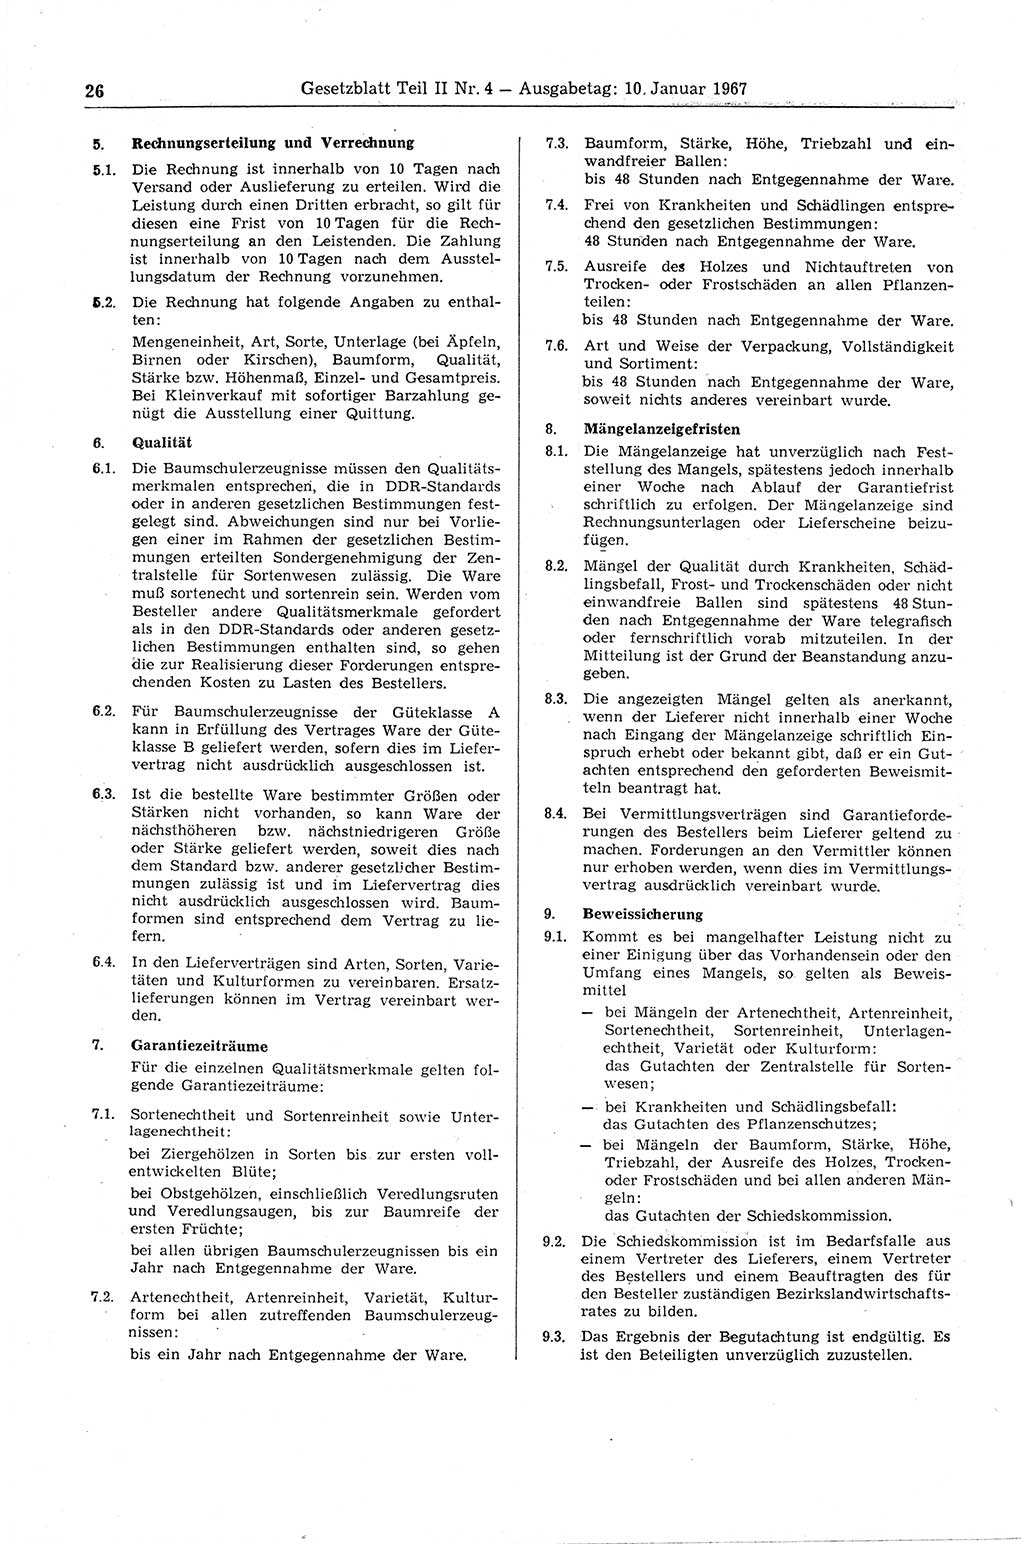 Gesetzblatt (GBl.) der Deutschen Demokratischen Republik (DDR) Teil ⅠⅠ 1967, Seite 26 (GBl. DDR ⅠⅠ 1967, S. 26)